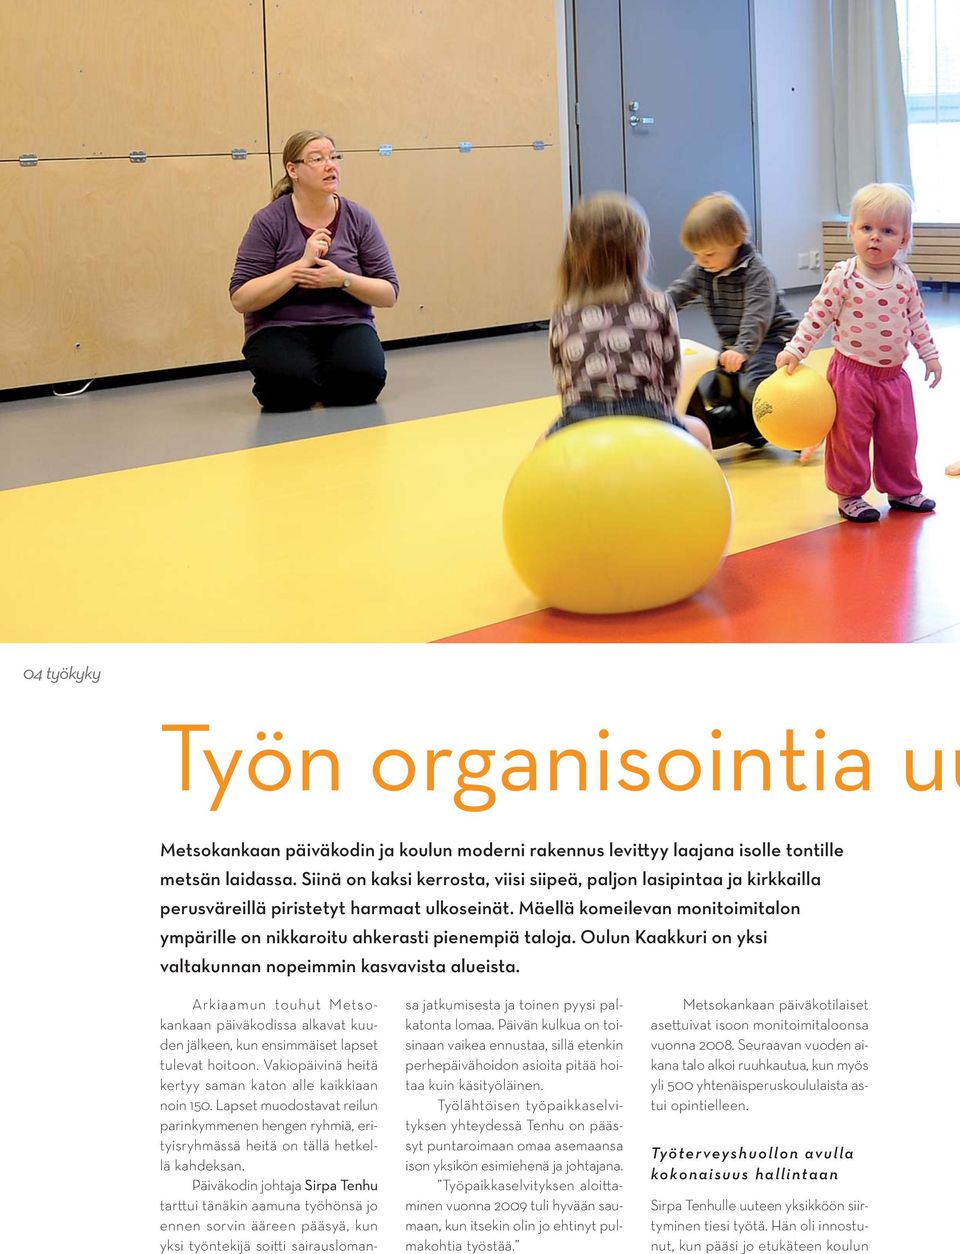 Oulun Kaakkuri on yksi valtakunnan nopeimmin kasvavista alueista. Arkiaamun touhut Metsokankaan päiväkodissa alkavat kuuden jälkeen, kun ensimmäiset lapset tulevat hoitoon.